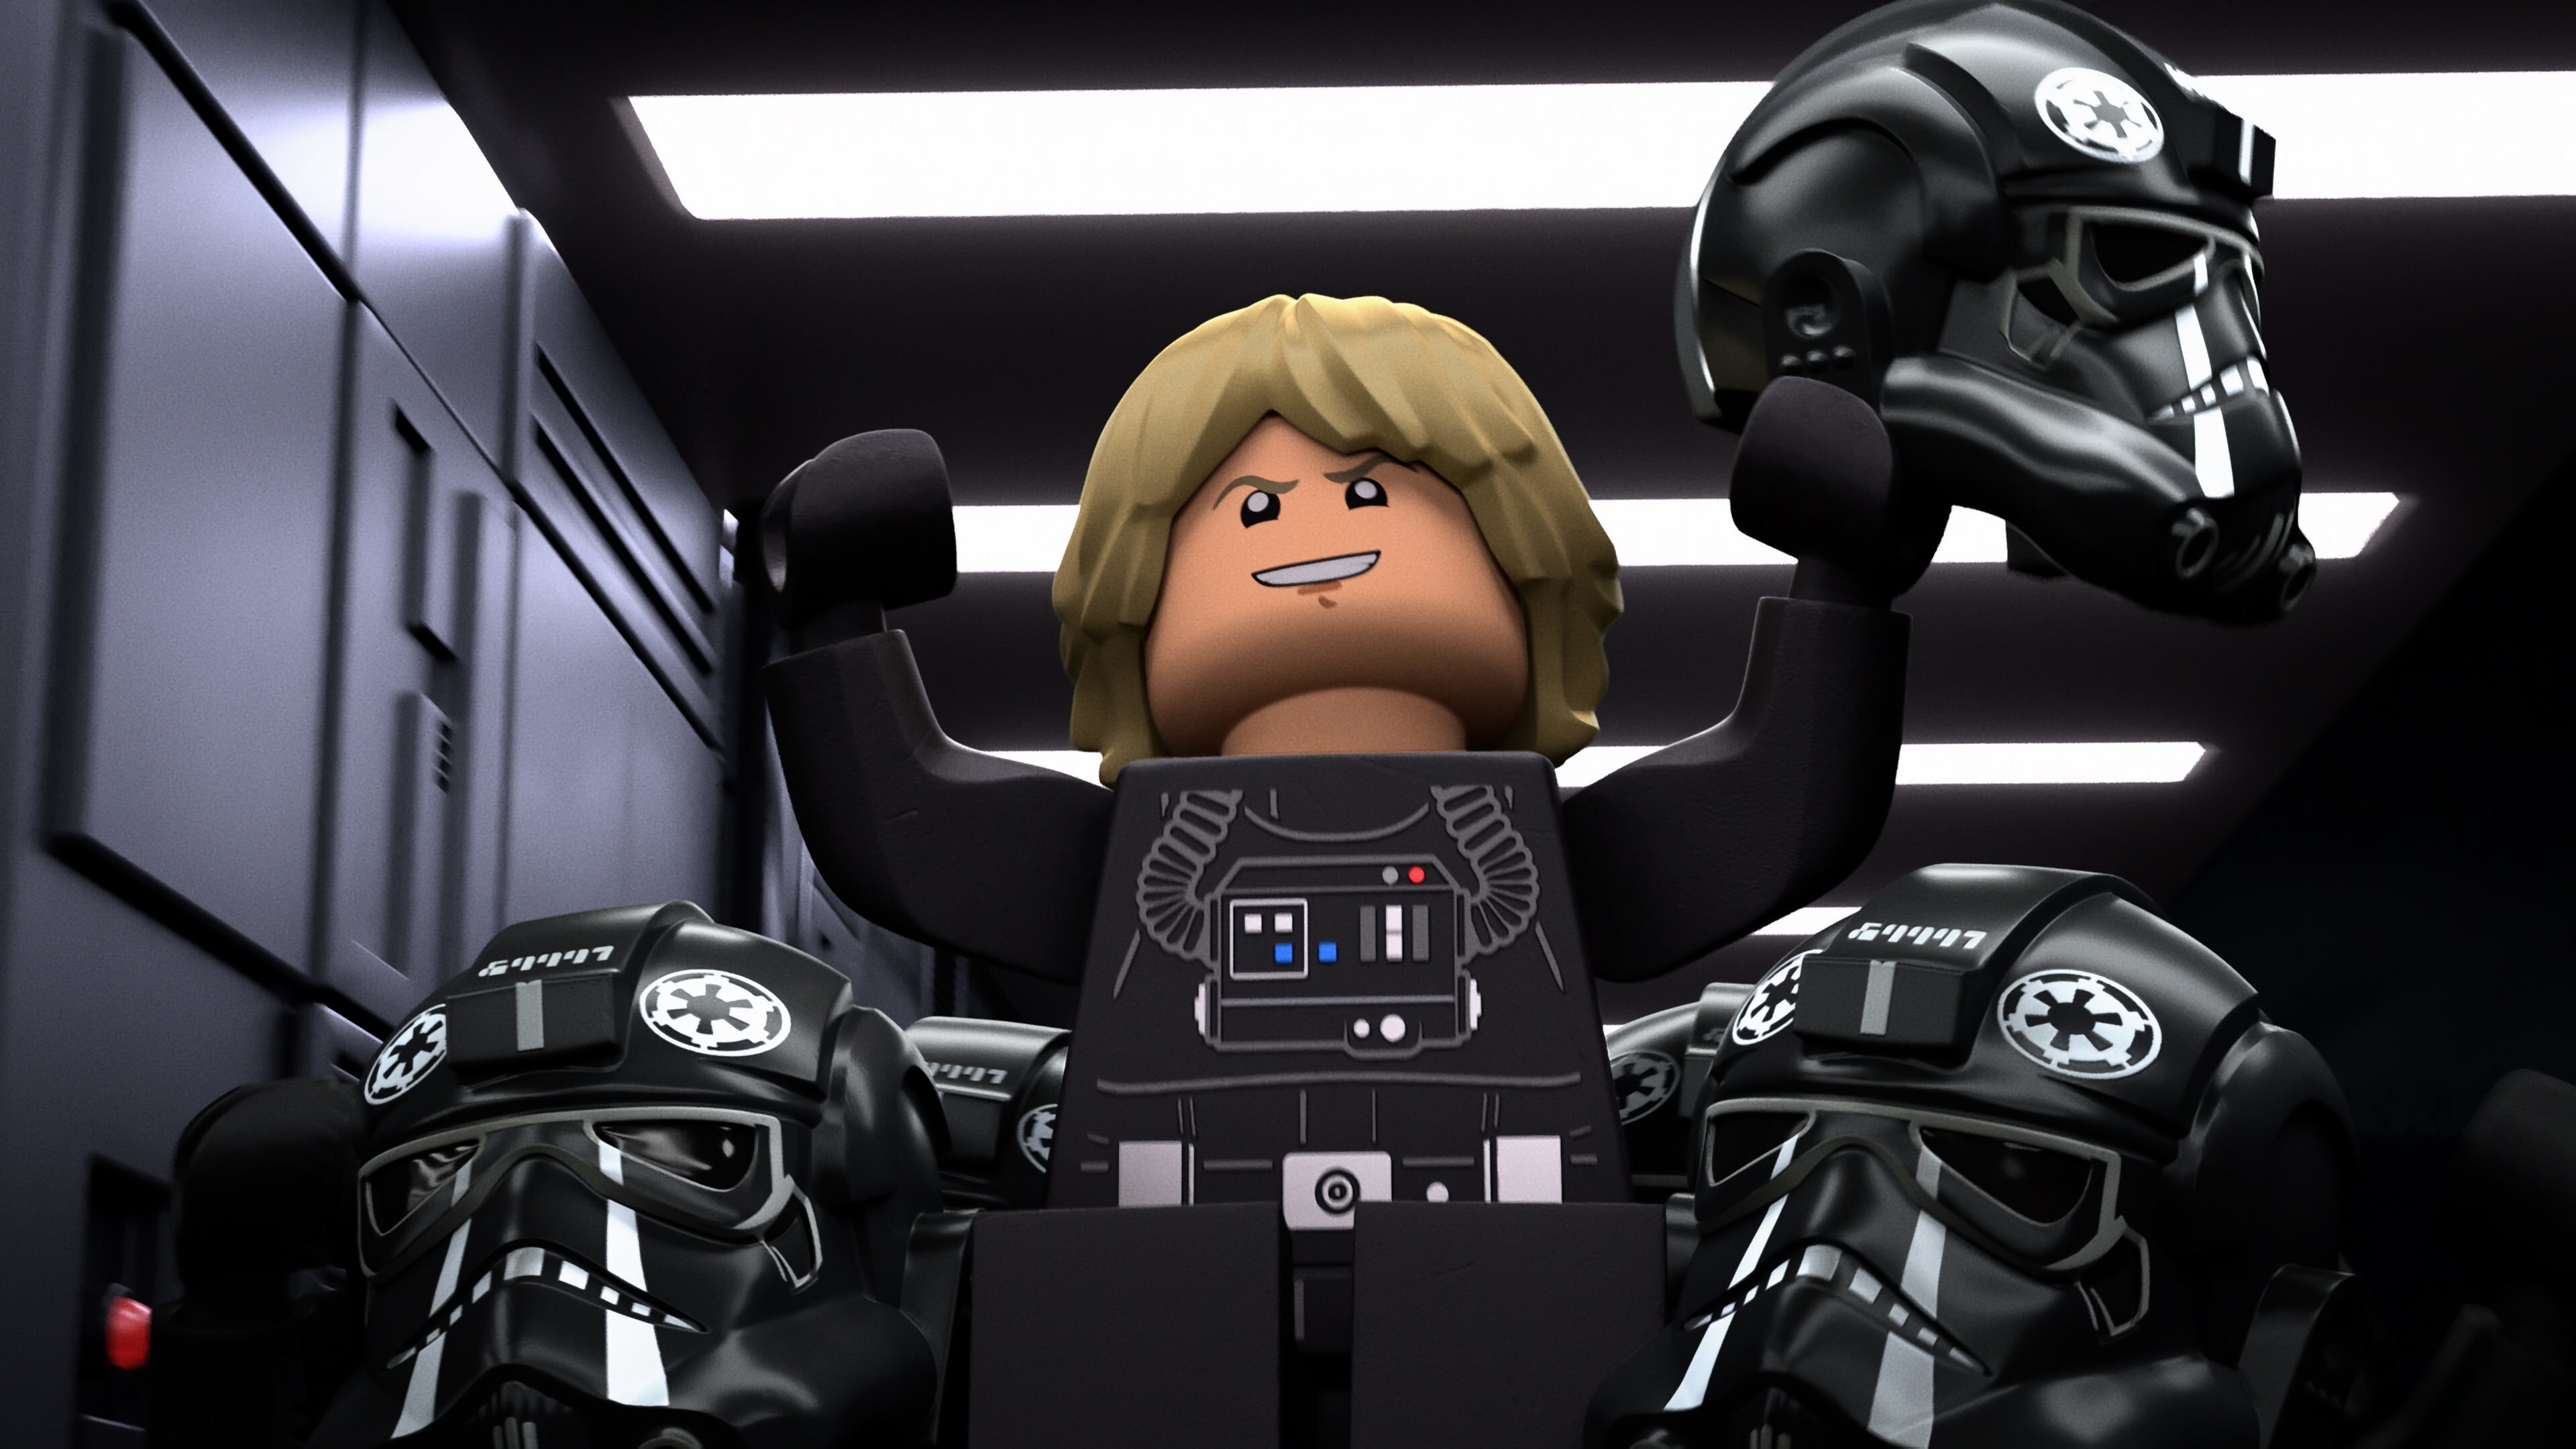 LEGO Star Wars mini figure